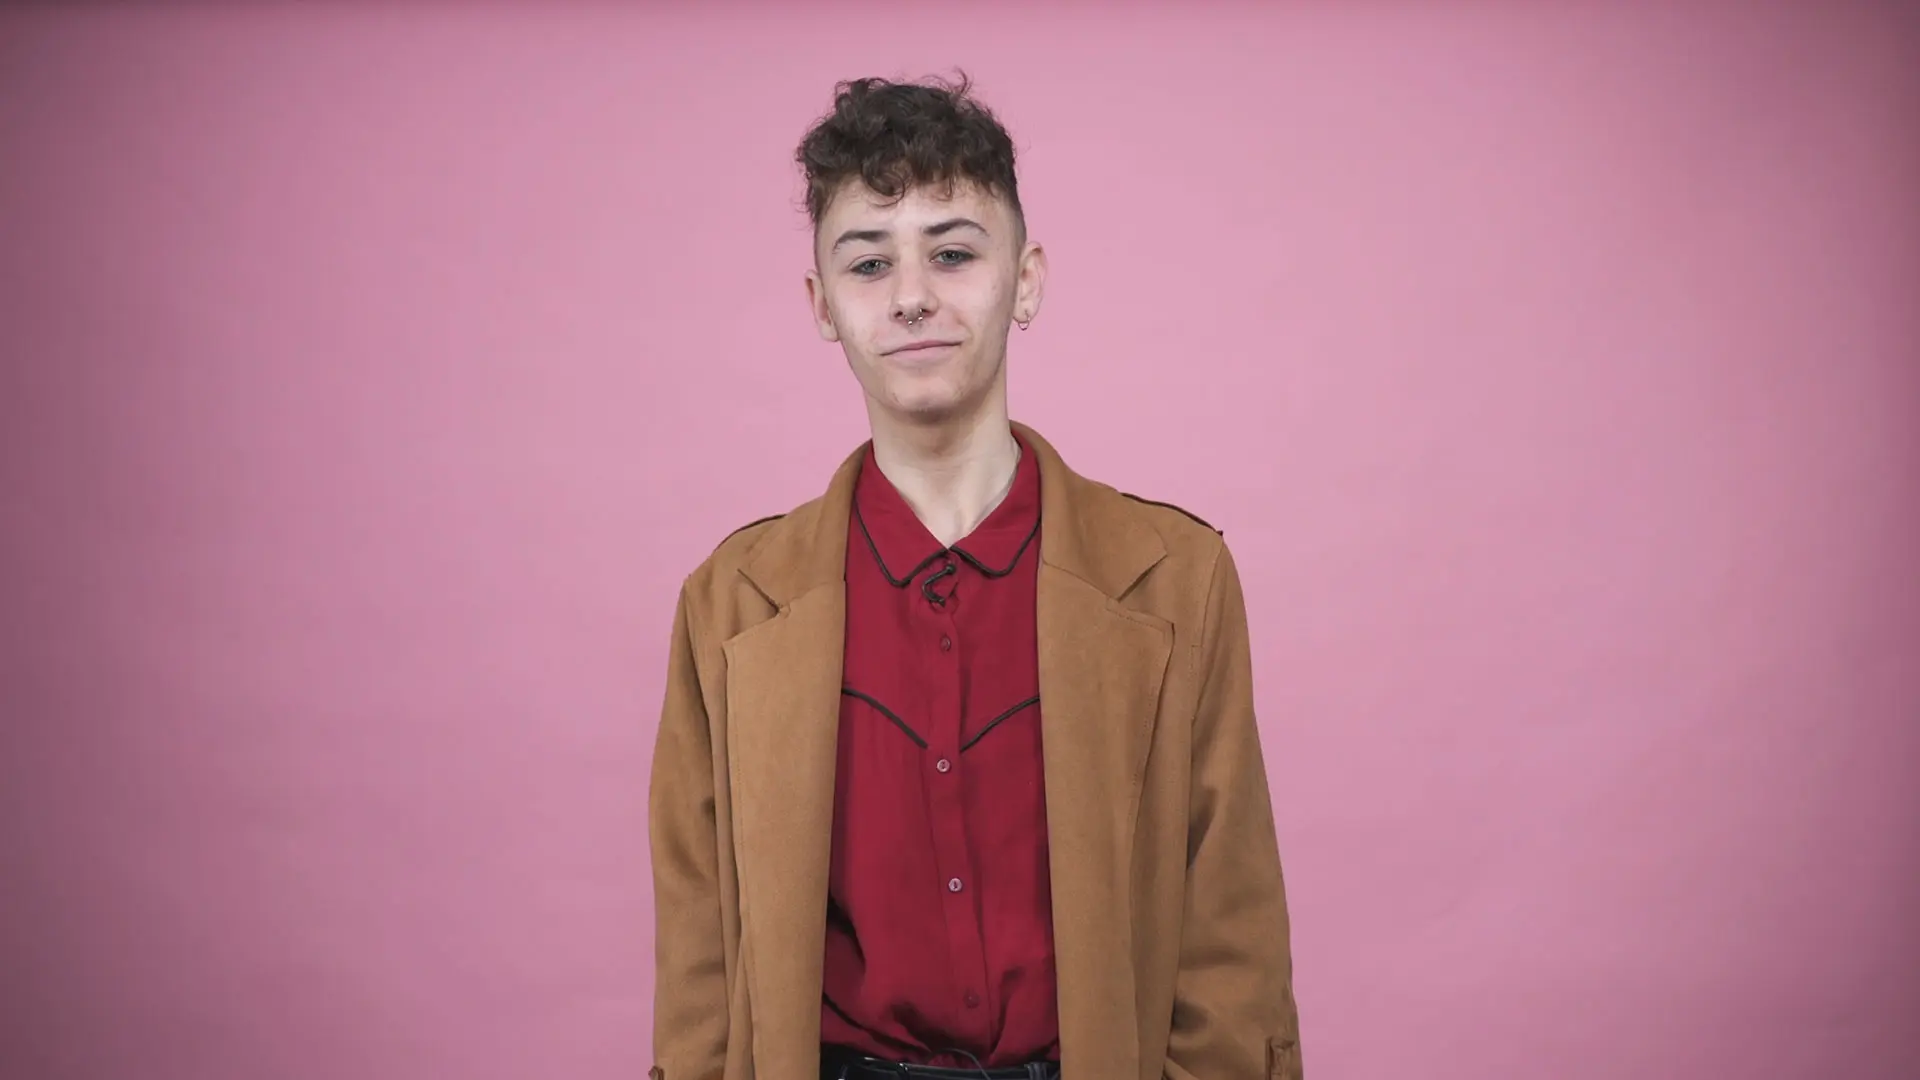 Vidéo : au cœur d’une polémique pour s’être maquillé au lycée, Alexis témoigne